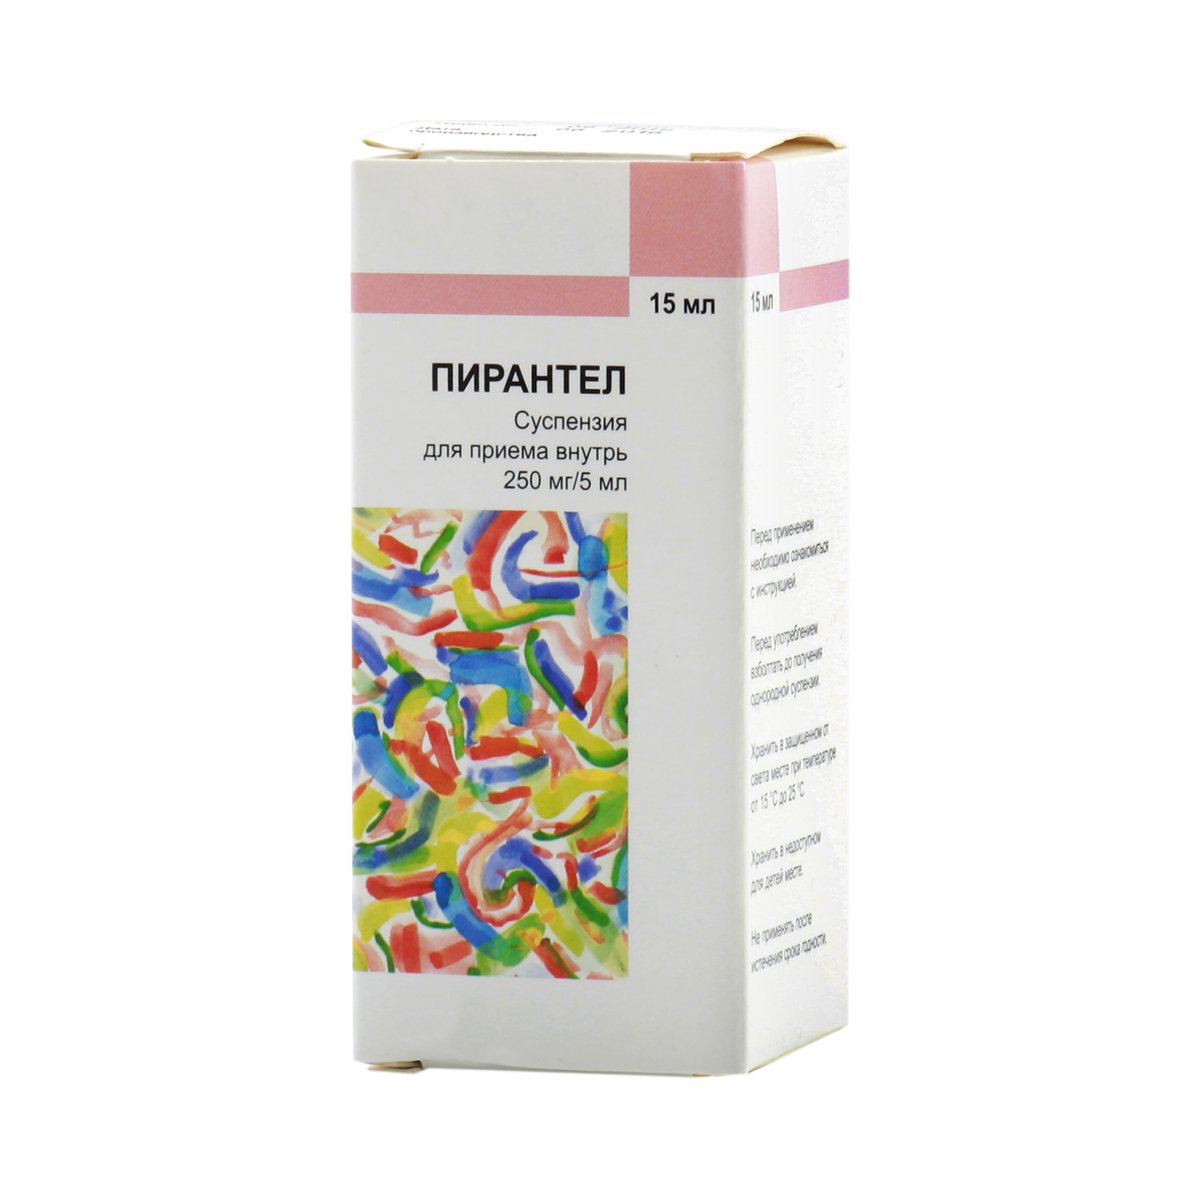 Пирантел (суспензия, 15 мл, 250/5 мг/мл) - цена,  онлайн  .